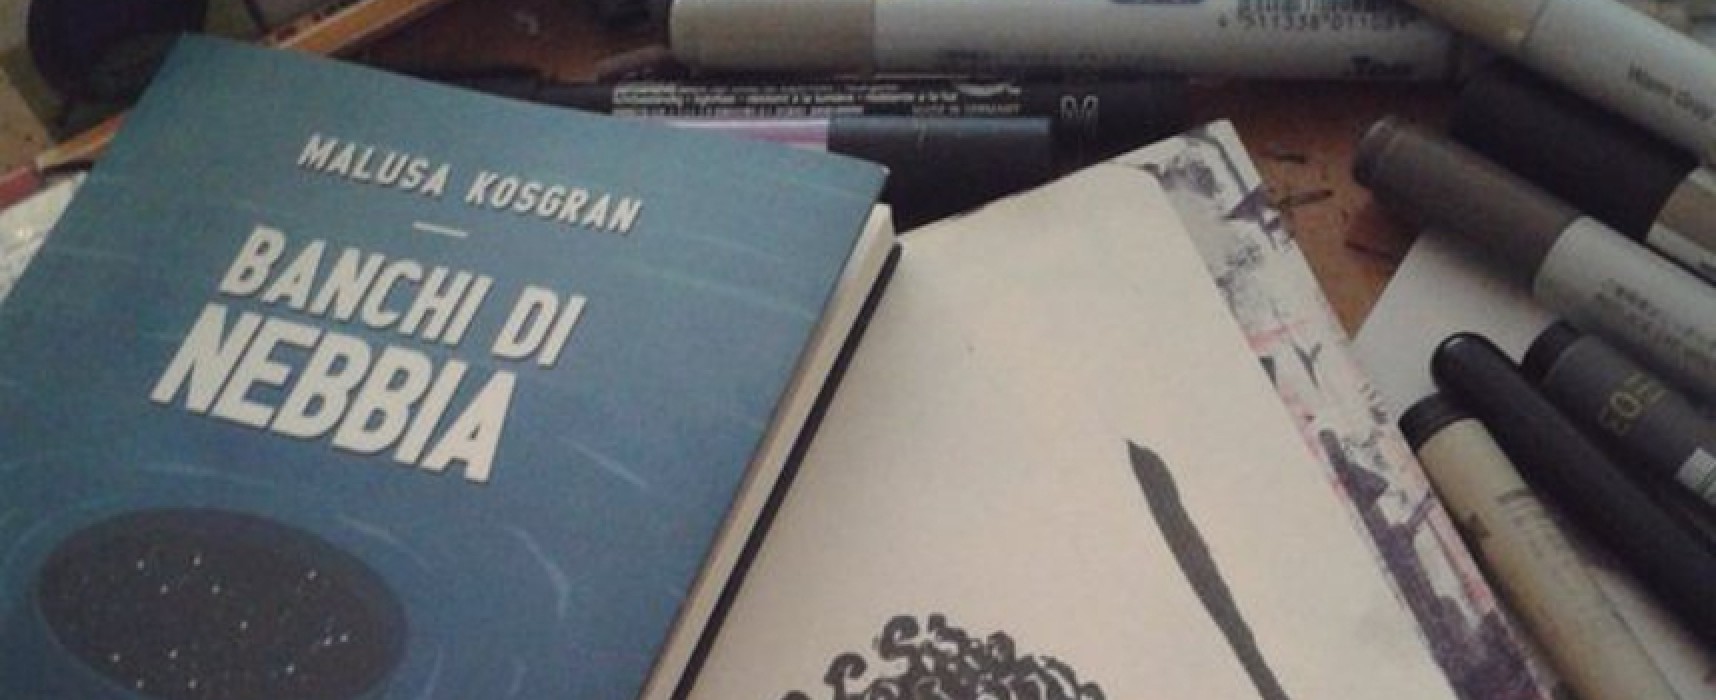 “Banchi di nebbia”, Malusa Kosgran presenta il suo libro all’Open Source